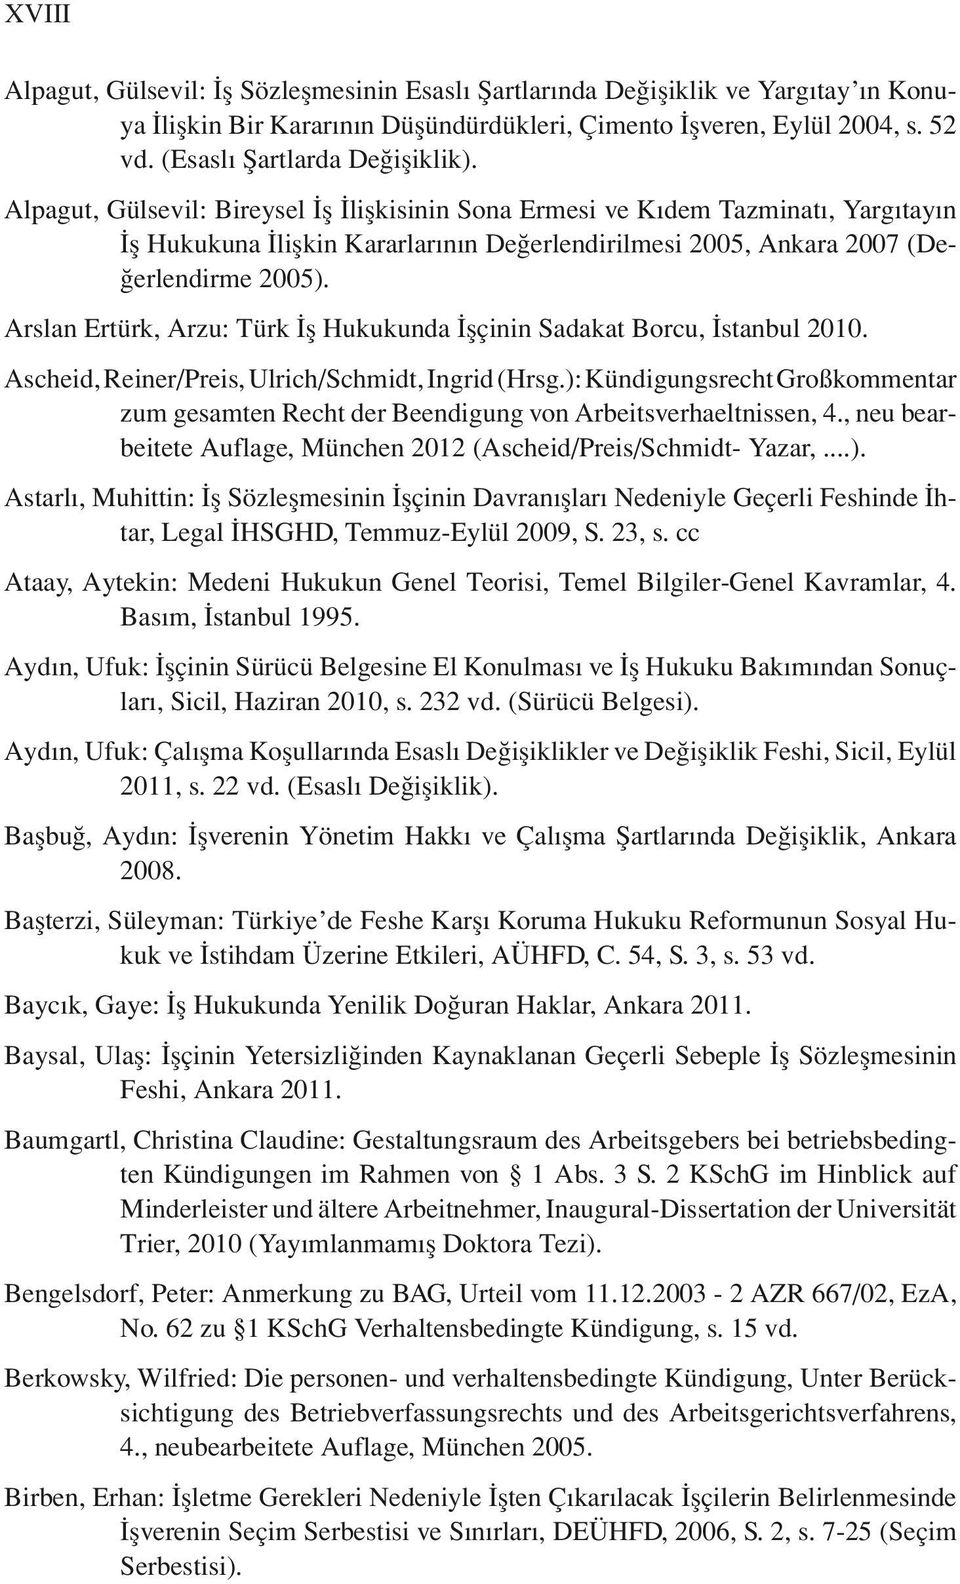 Alpagut, Gülsevil: Bireysel İş İlişkisinin Sona Ermesi ve Kıdem Tazminatı, Yargıtayın İş Hukukuna İlişkin Kararlarının Değerlendirilmesi 2005, Ankara 2007 (Değerlendirme 2005).